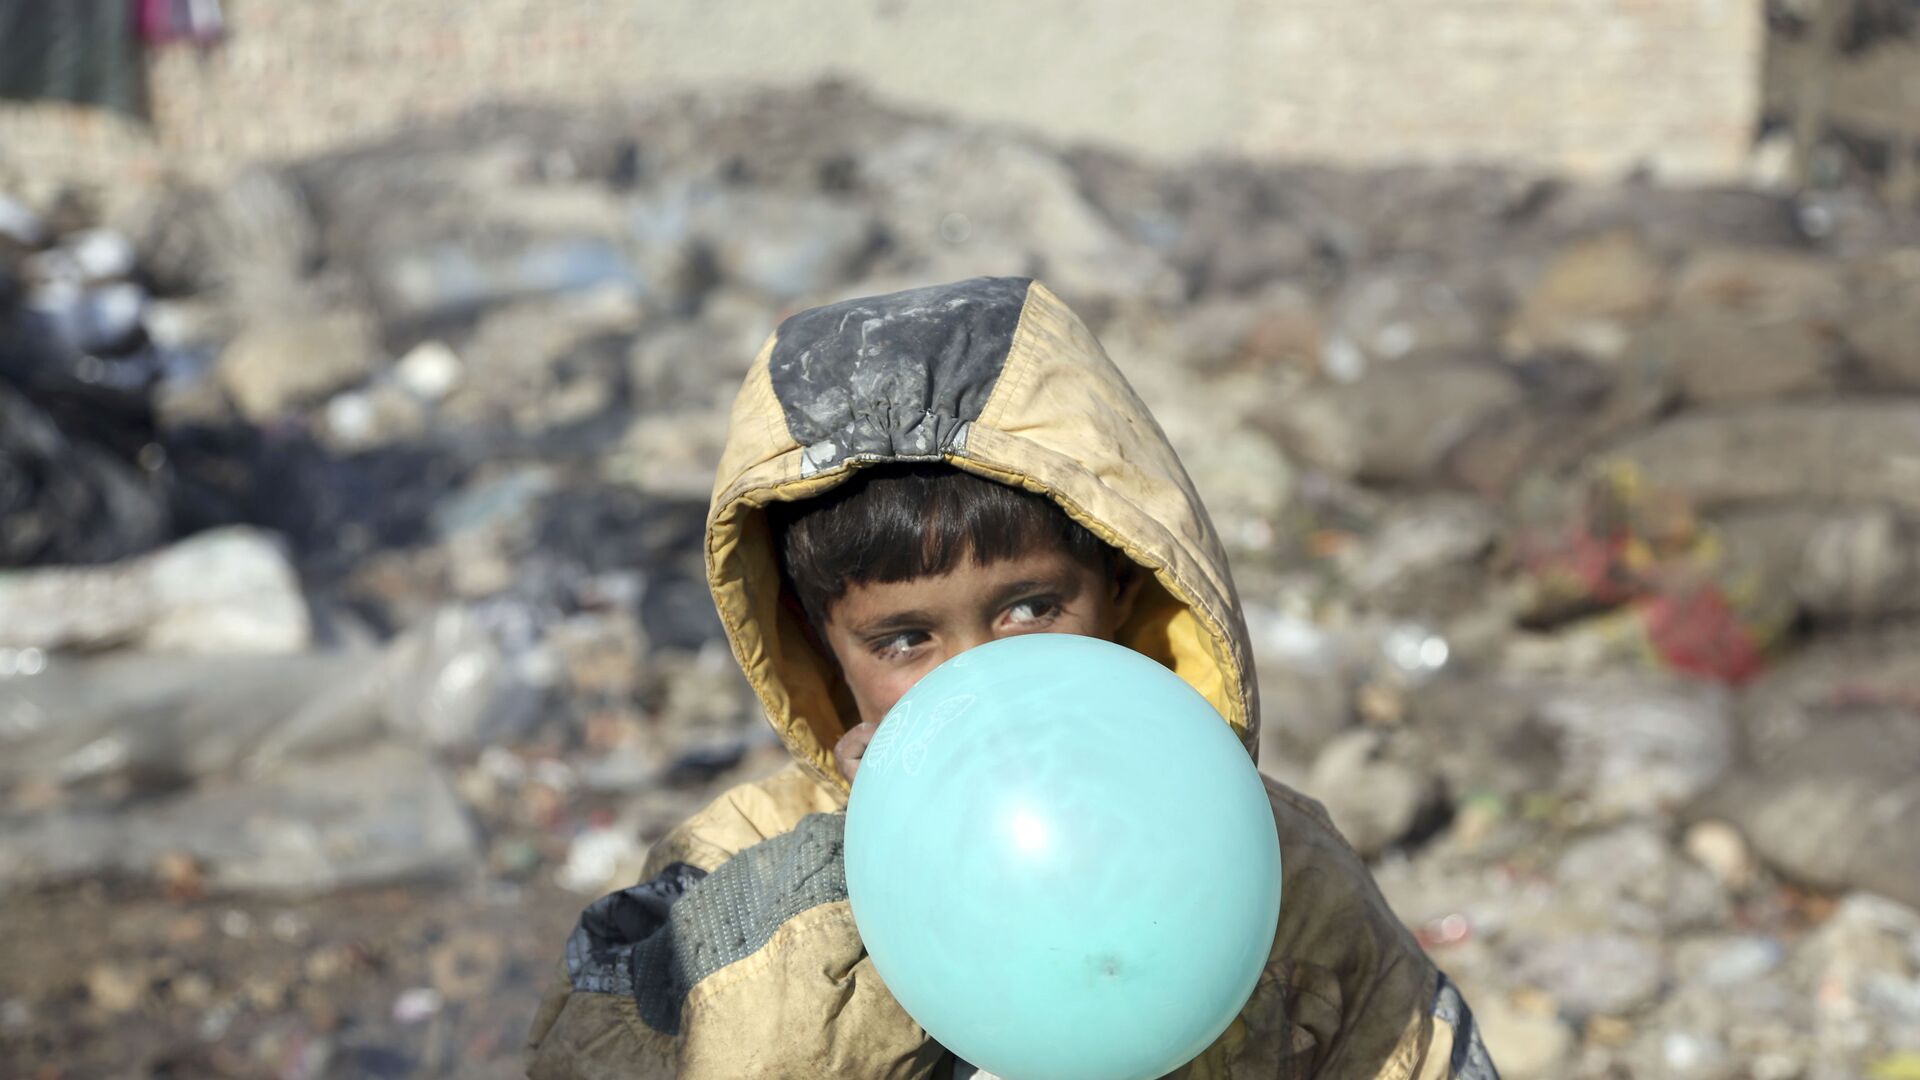 Афганский мальчик надувает воздушный шарик, окраина Кабула, Афганистан, 2017 год - Sputnik Таджикистан, 1920, 17.08.2022